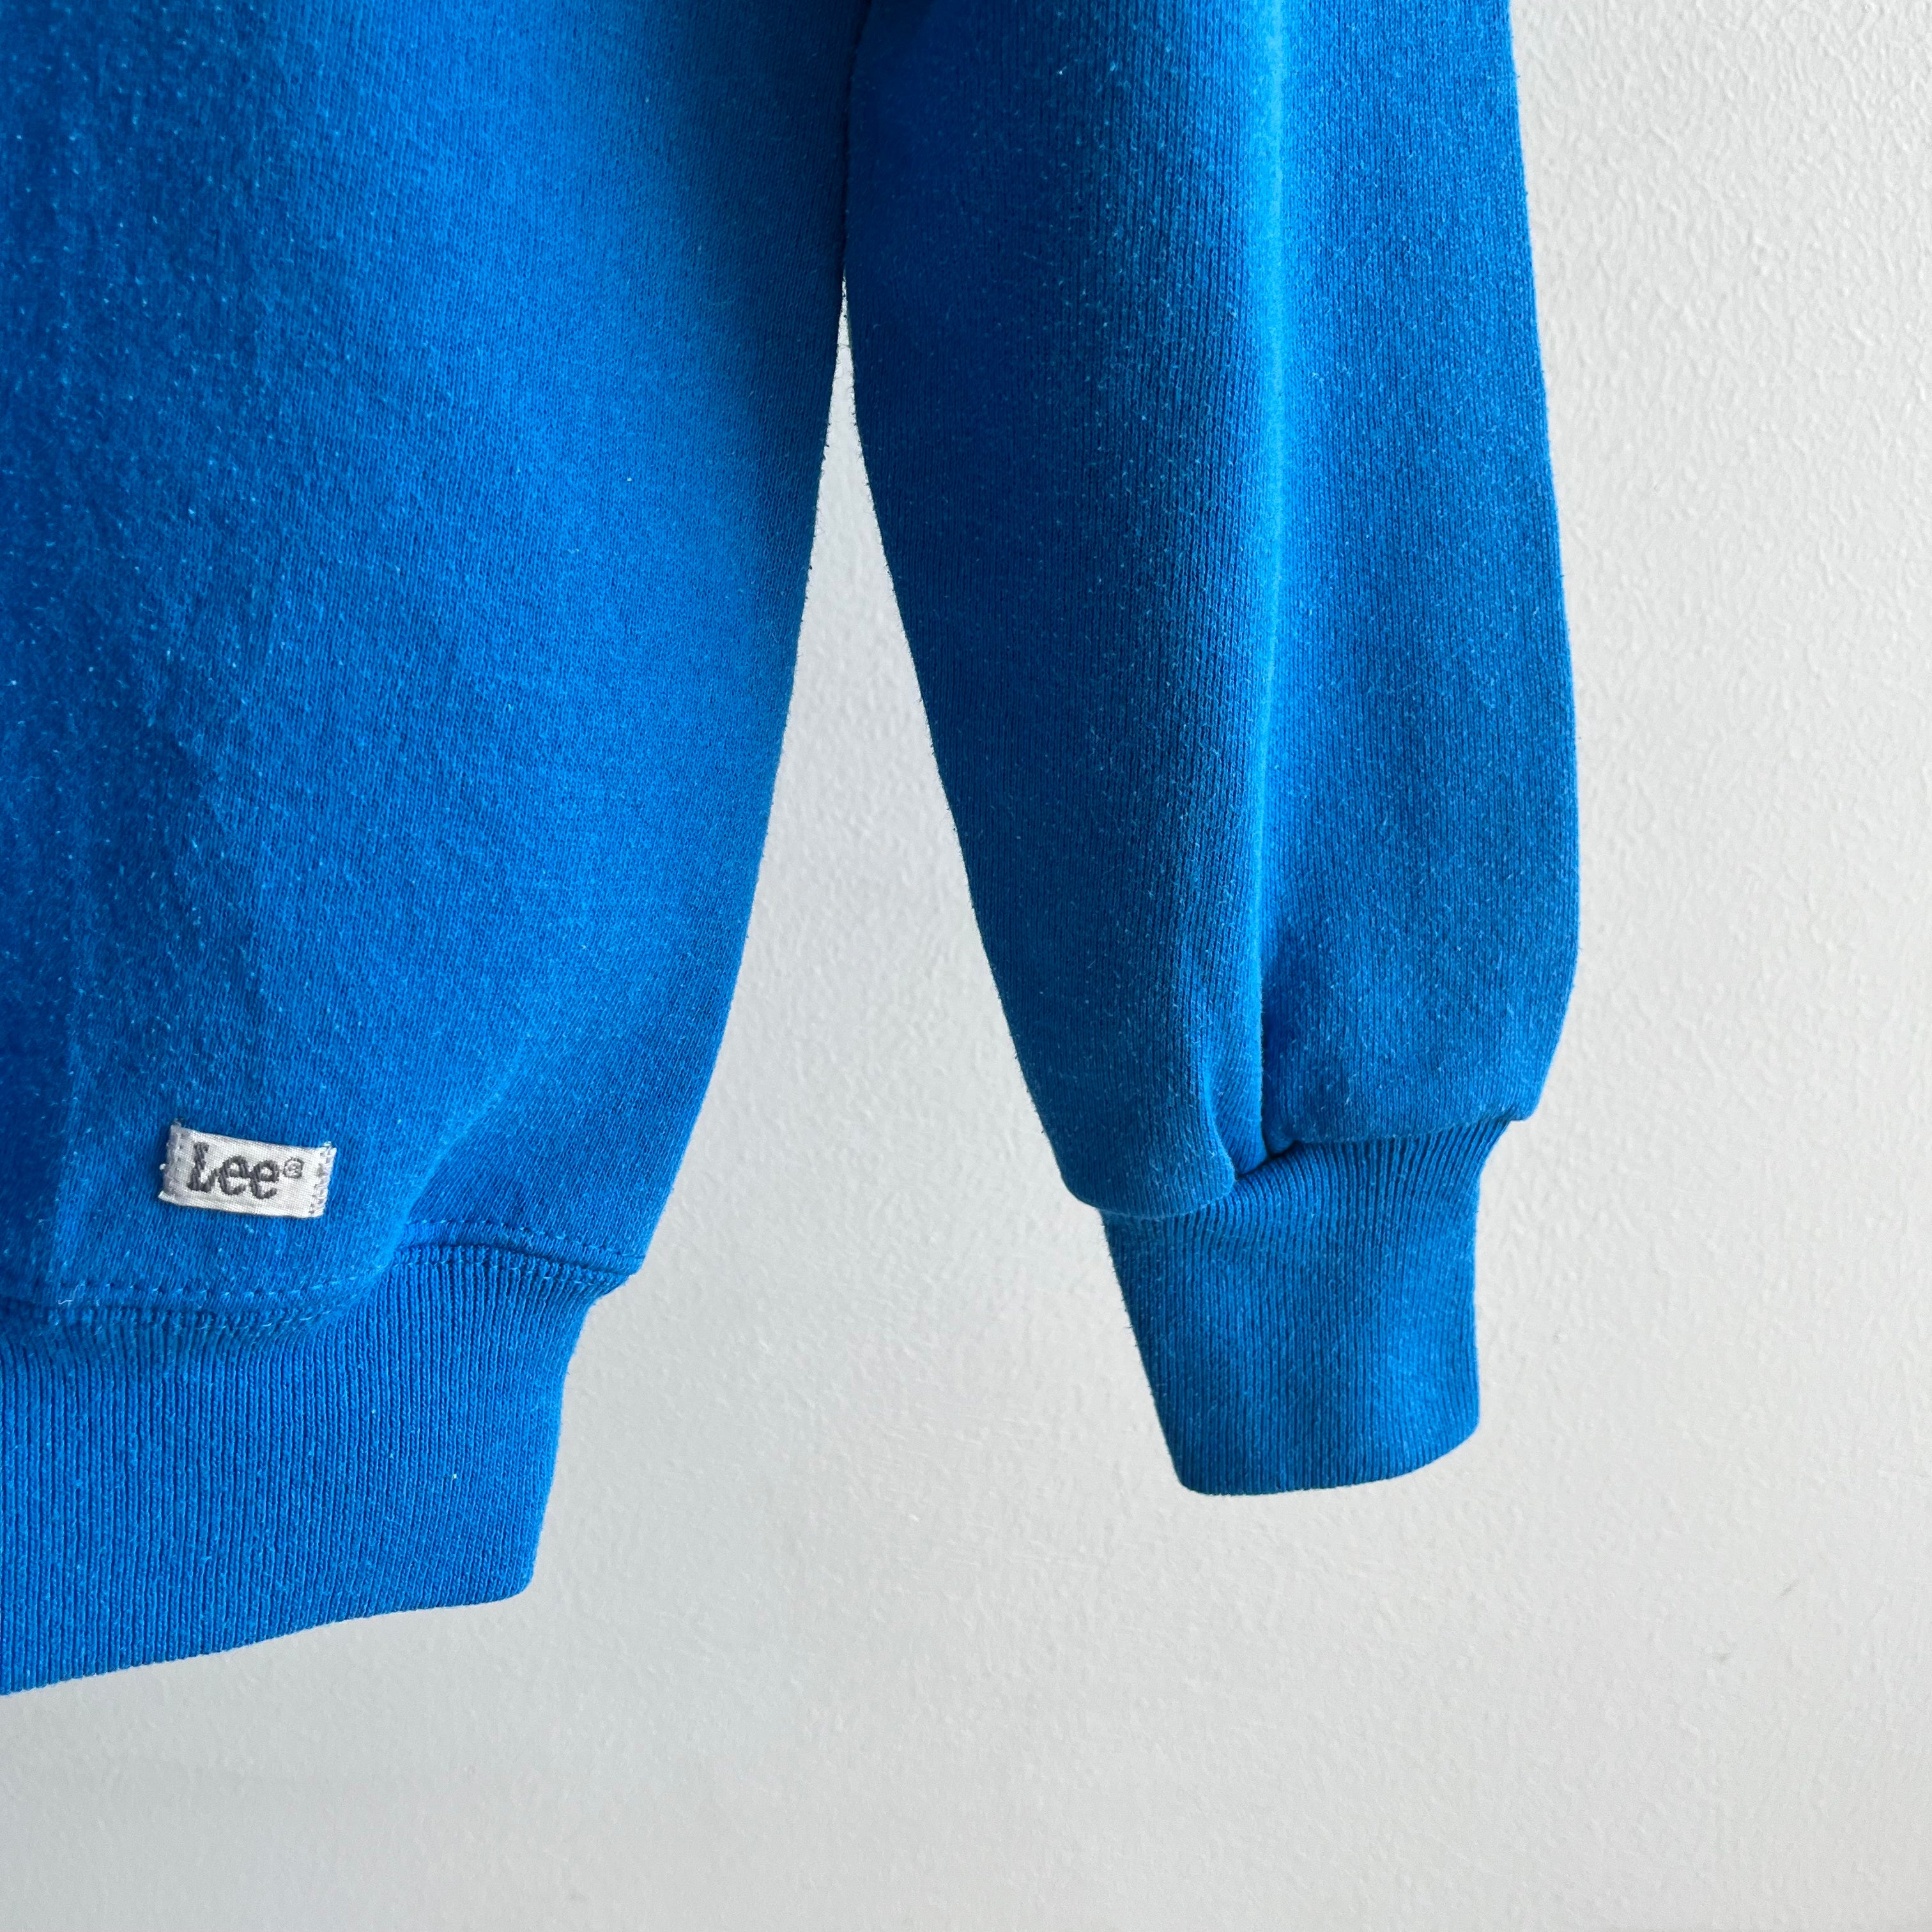 1980/90s Lee Brand Blank Turquoise Sweatshirt